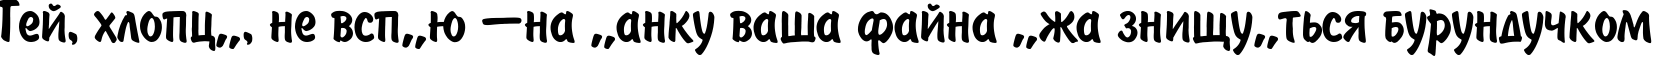 Пример написания шрифтом BrushType-SemiBold текста на украинском